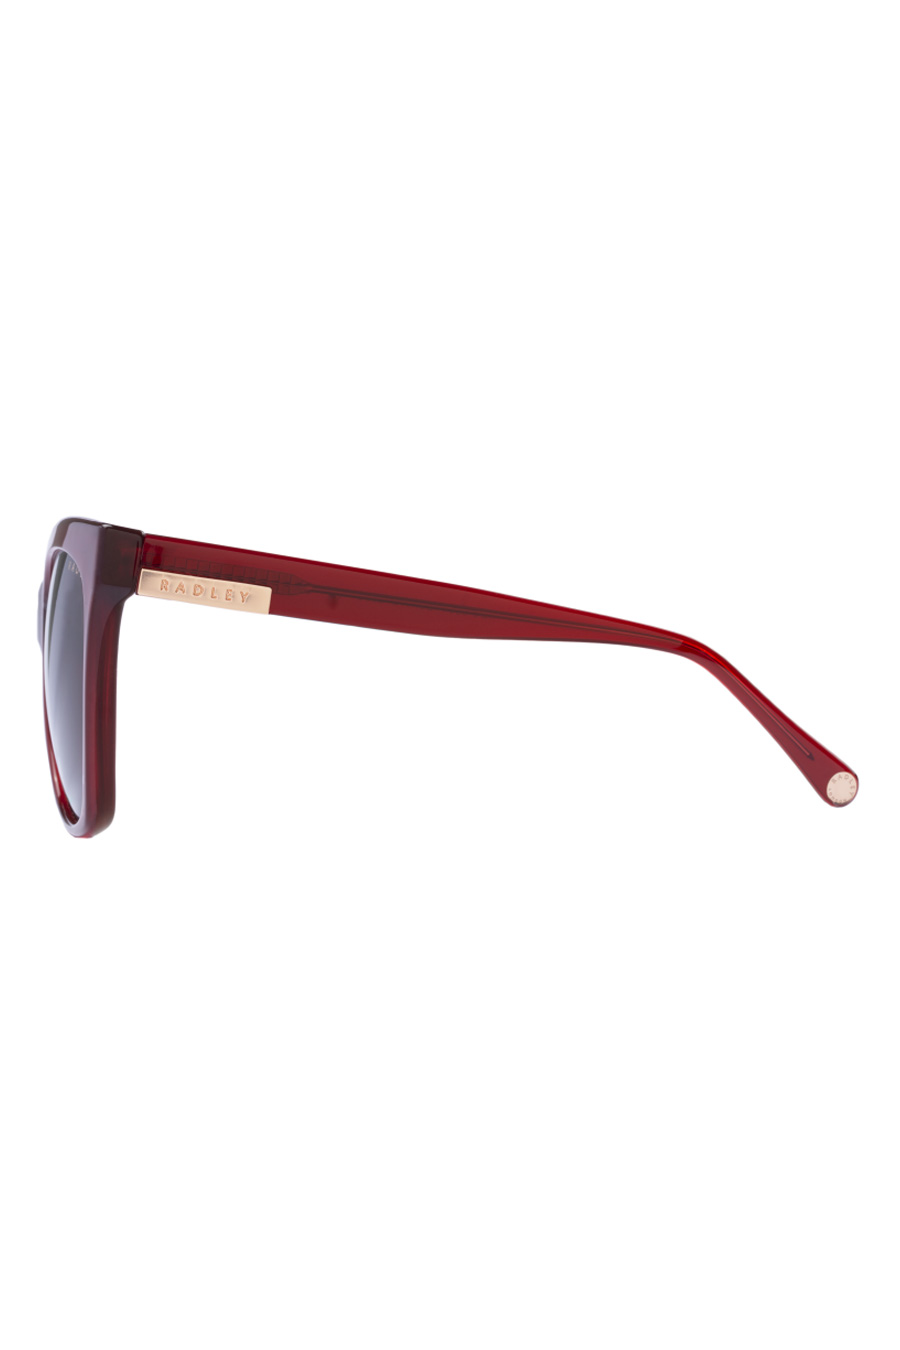 Солнечные очки RADLEY RDS-6504-172